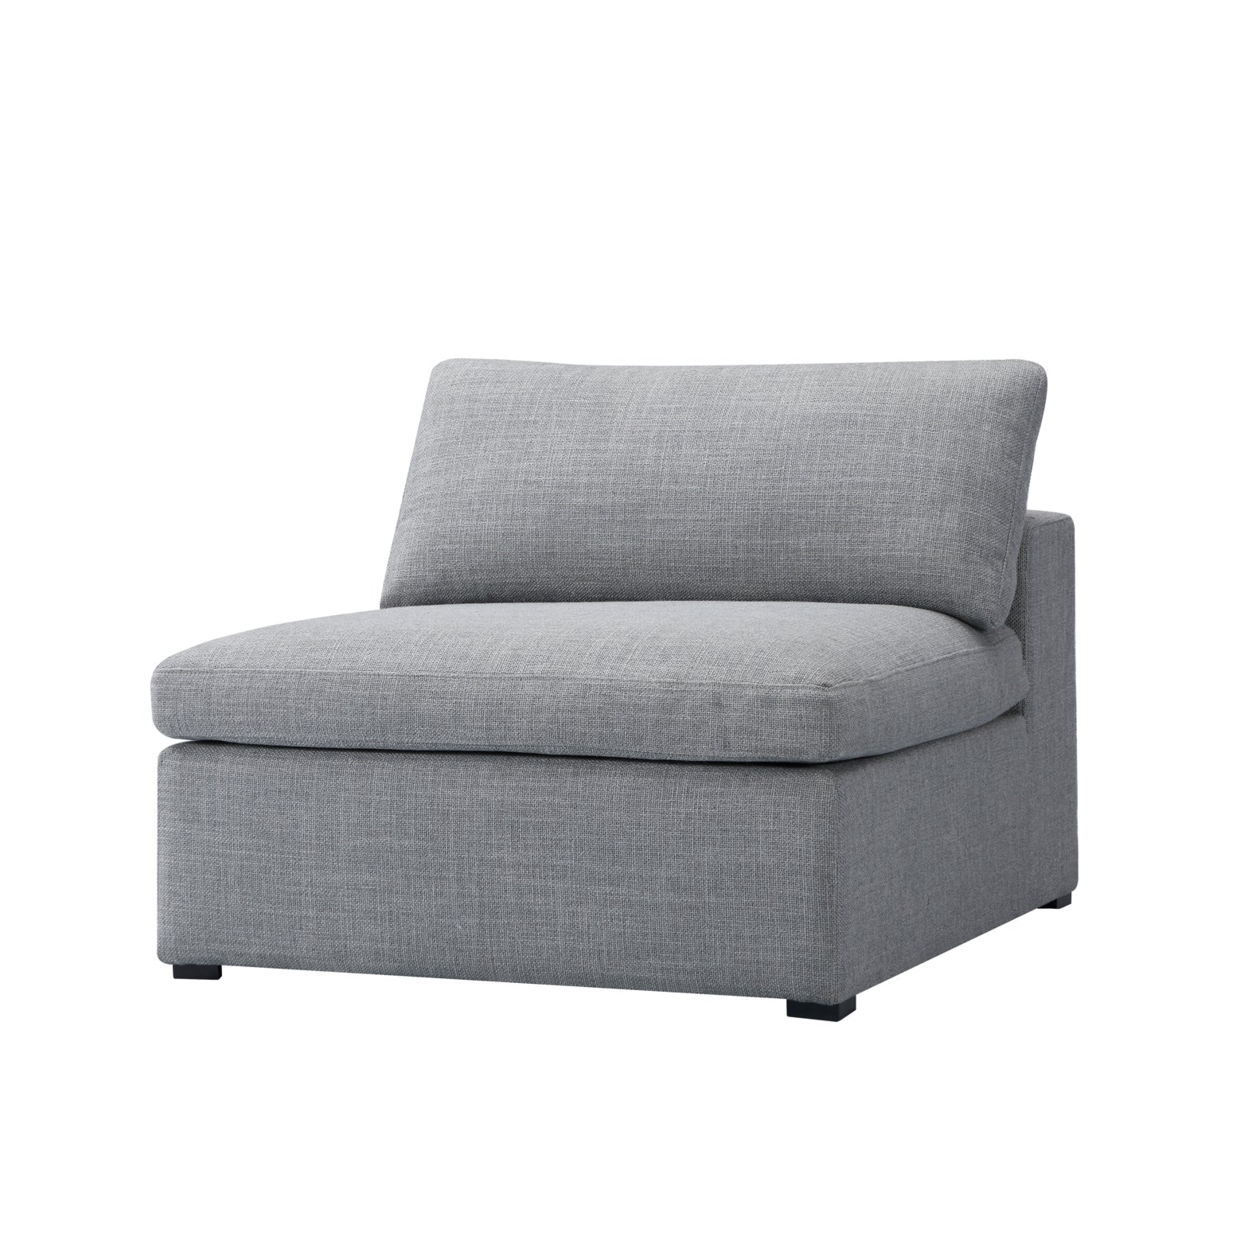 InÃ¨s Sofa - 1-Seater Single Module - Grey Fabric